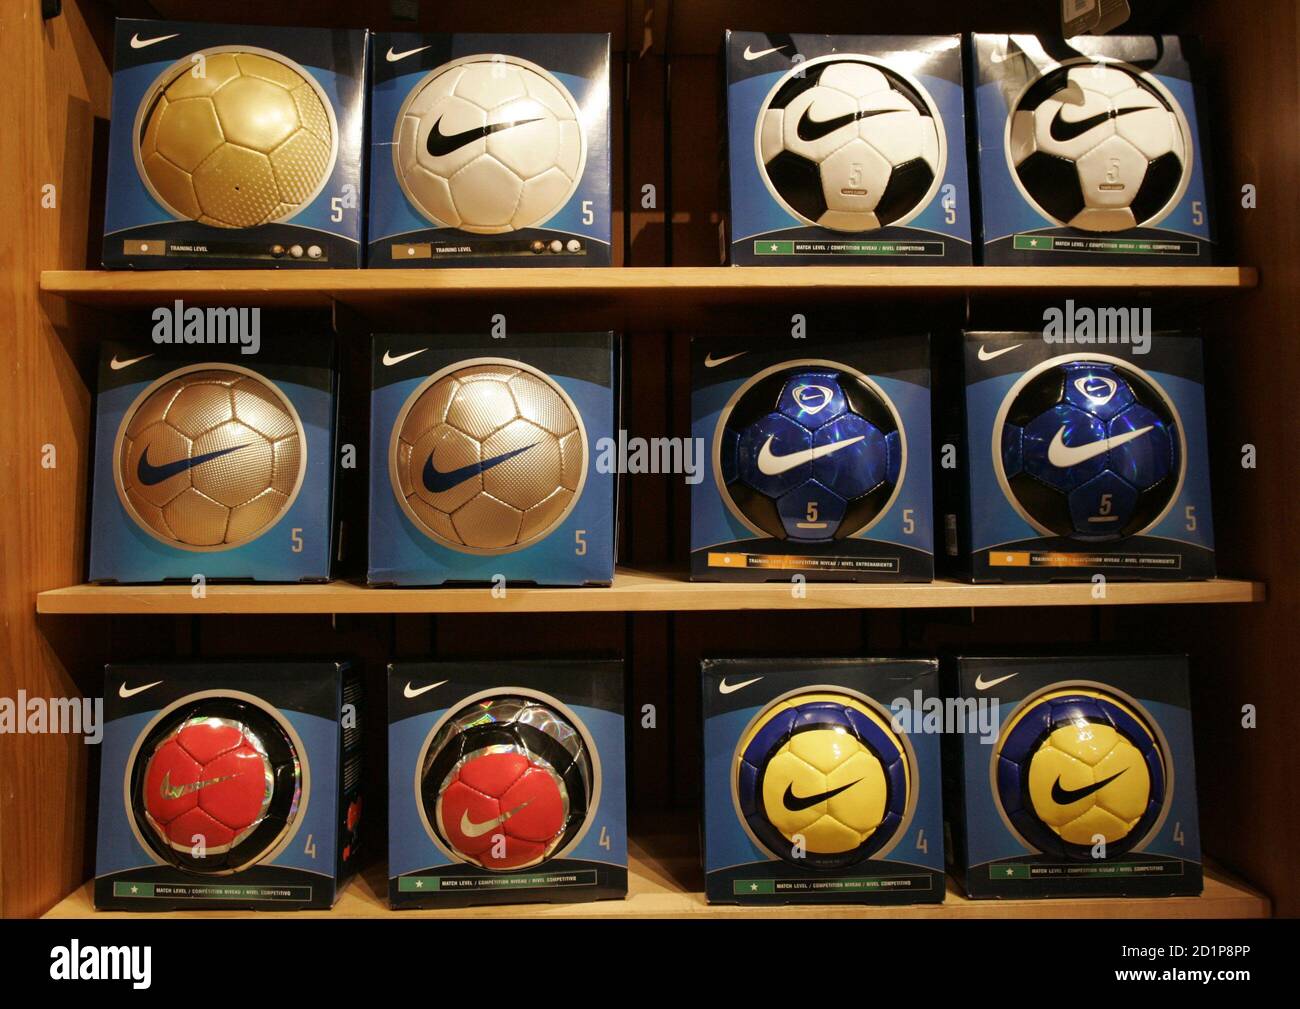 Las pelotas de fútbol la Marca Nike están en exhibición en una tienda Nike en el centro de Portland, 21 de marzo de 2006. Nike firmado ocho para